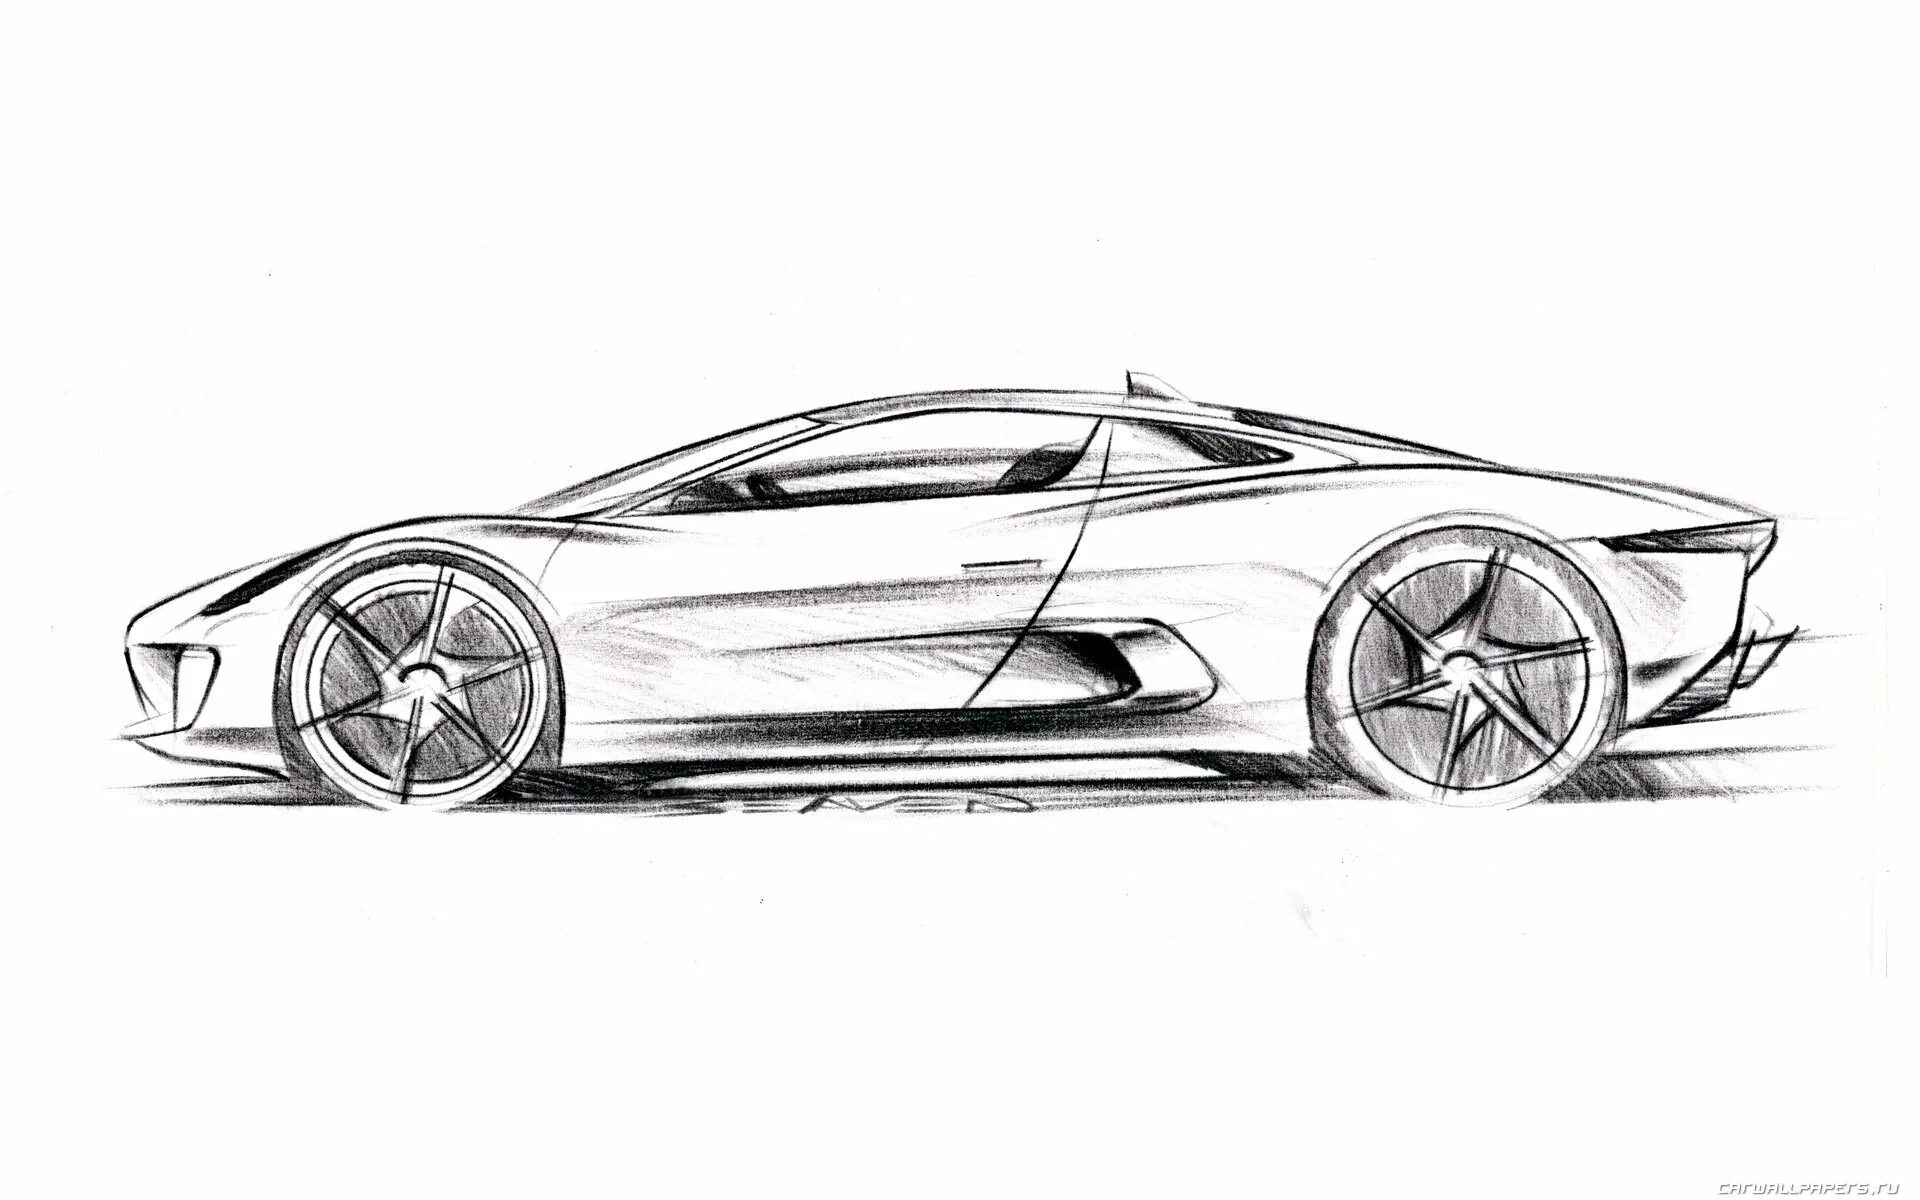 Автомобиль рисунок. Эскиз машины. Рисунок машины карандашом. Дизайнерские рисунки автомобилей.